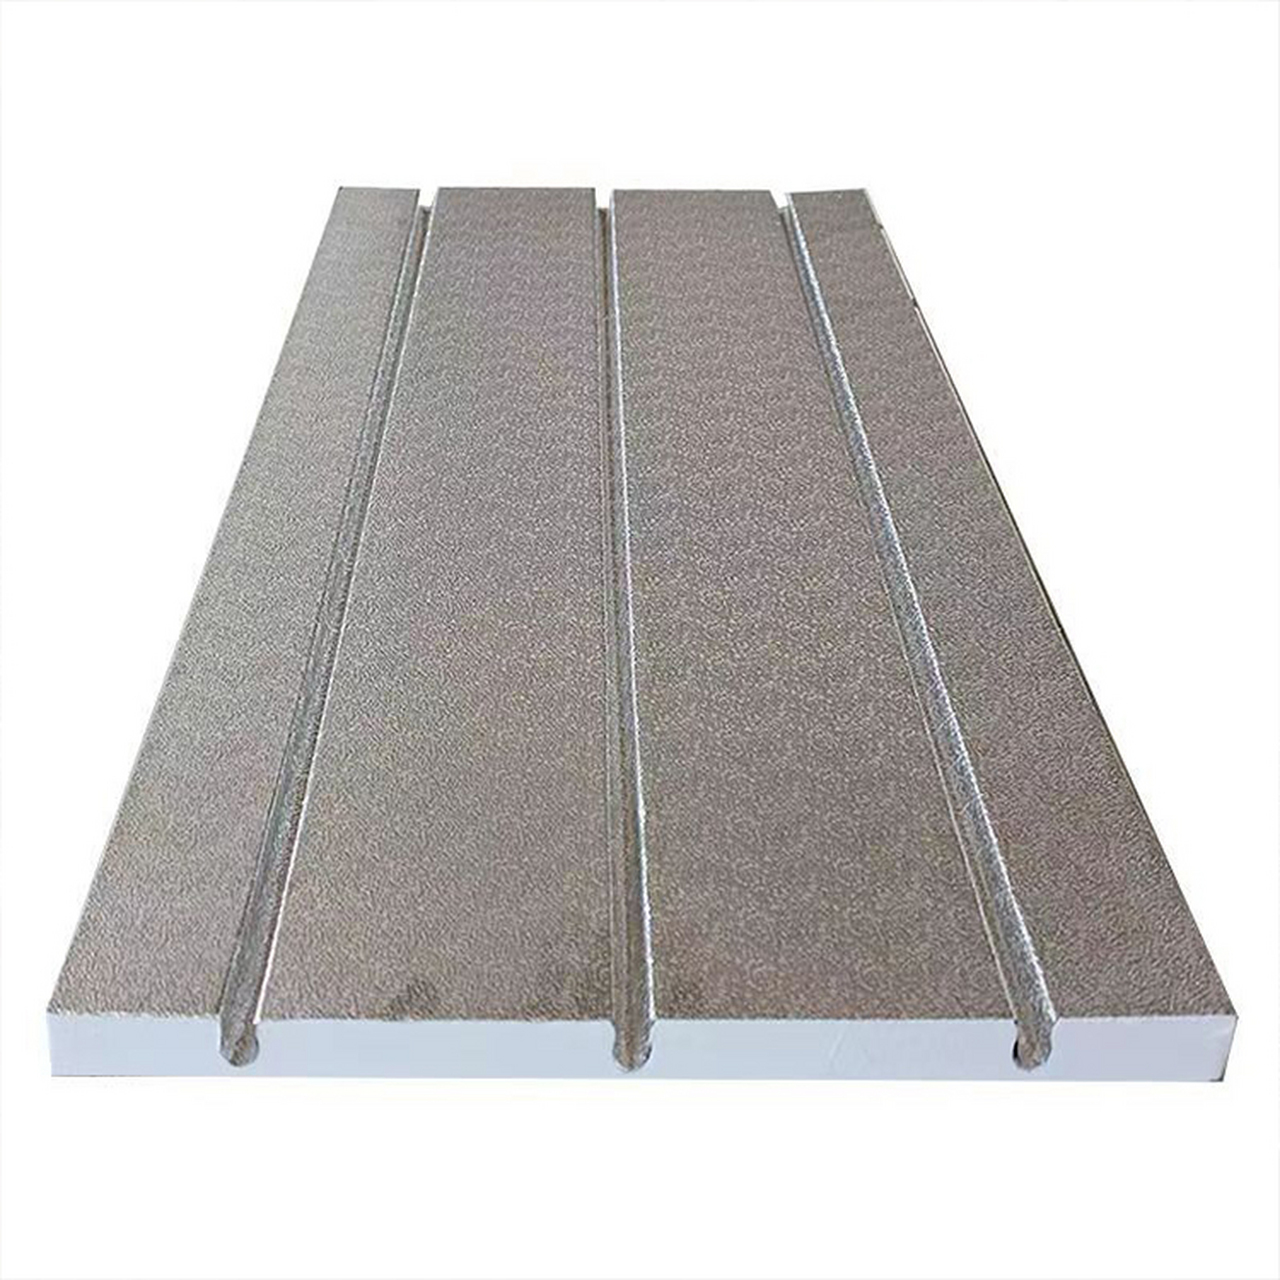 挤塑板厂家,挤塑板,石墨挤塑板保温板,水地暖挤塑板 铝箔挤塑板的优点